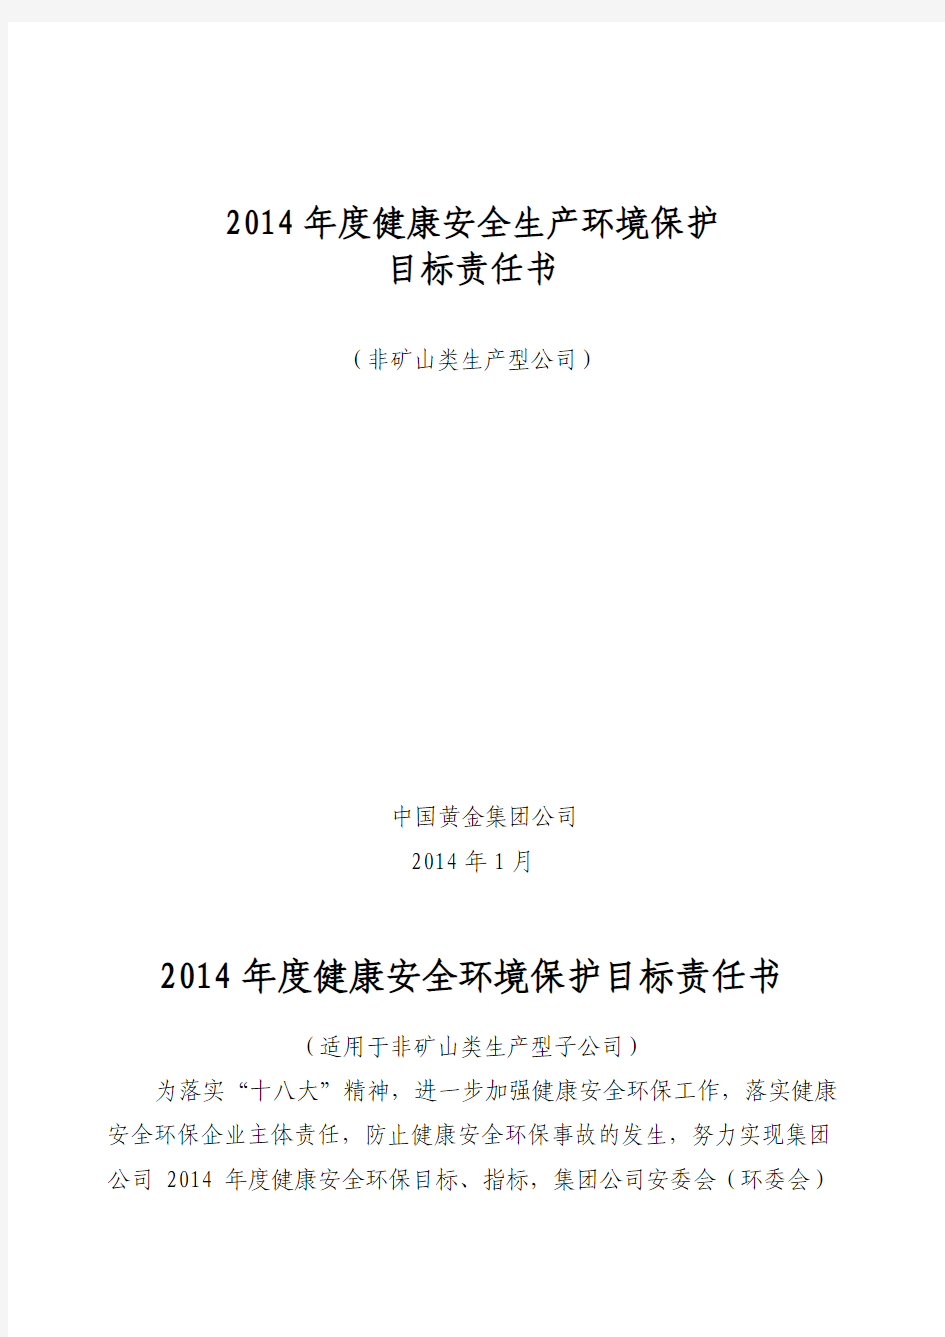 2014年集团安全环保目标责任书(非矿企业)